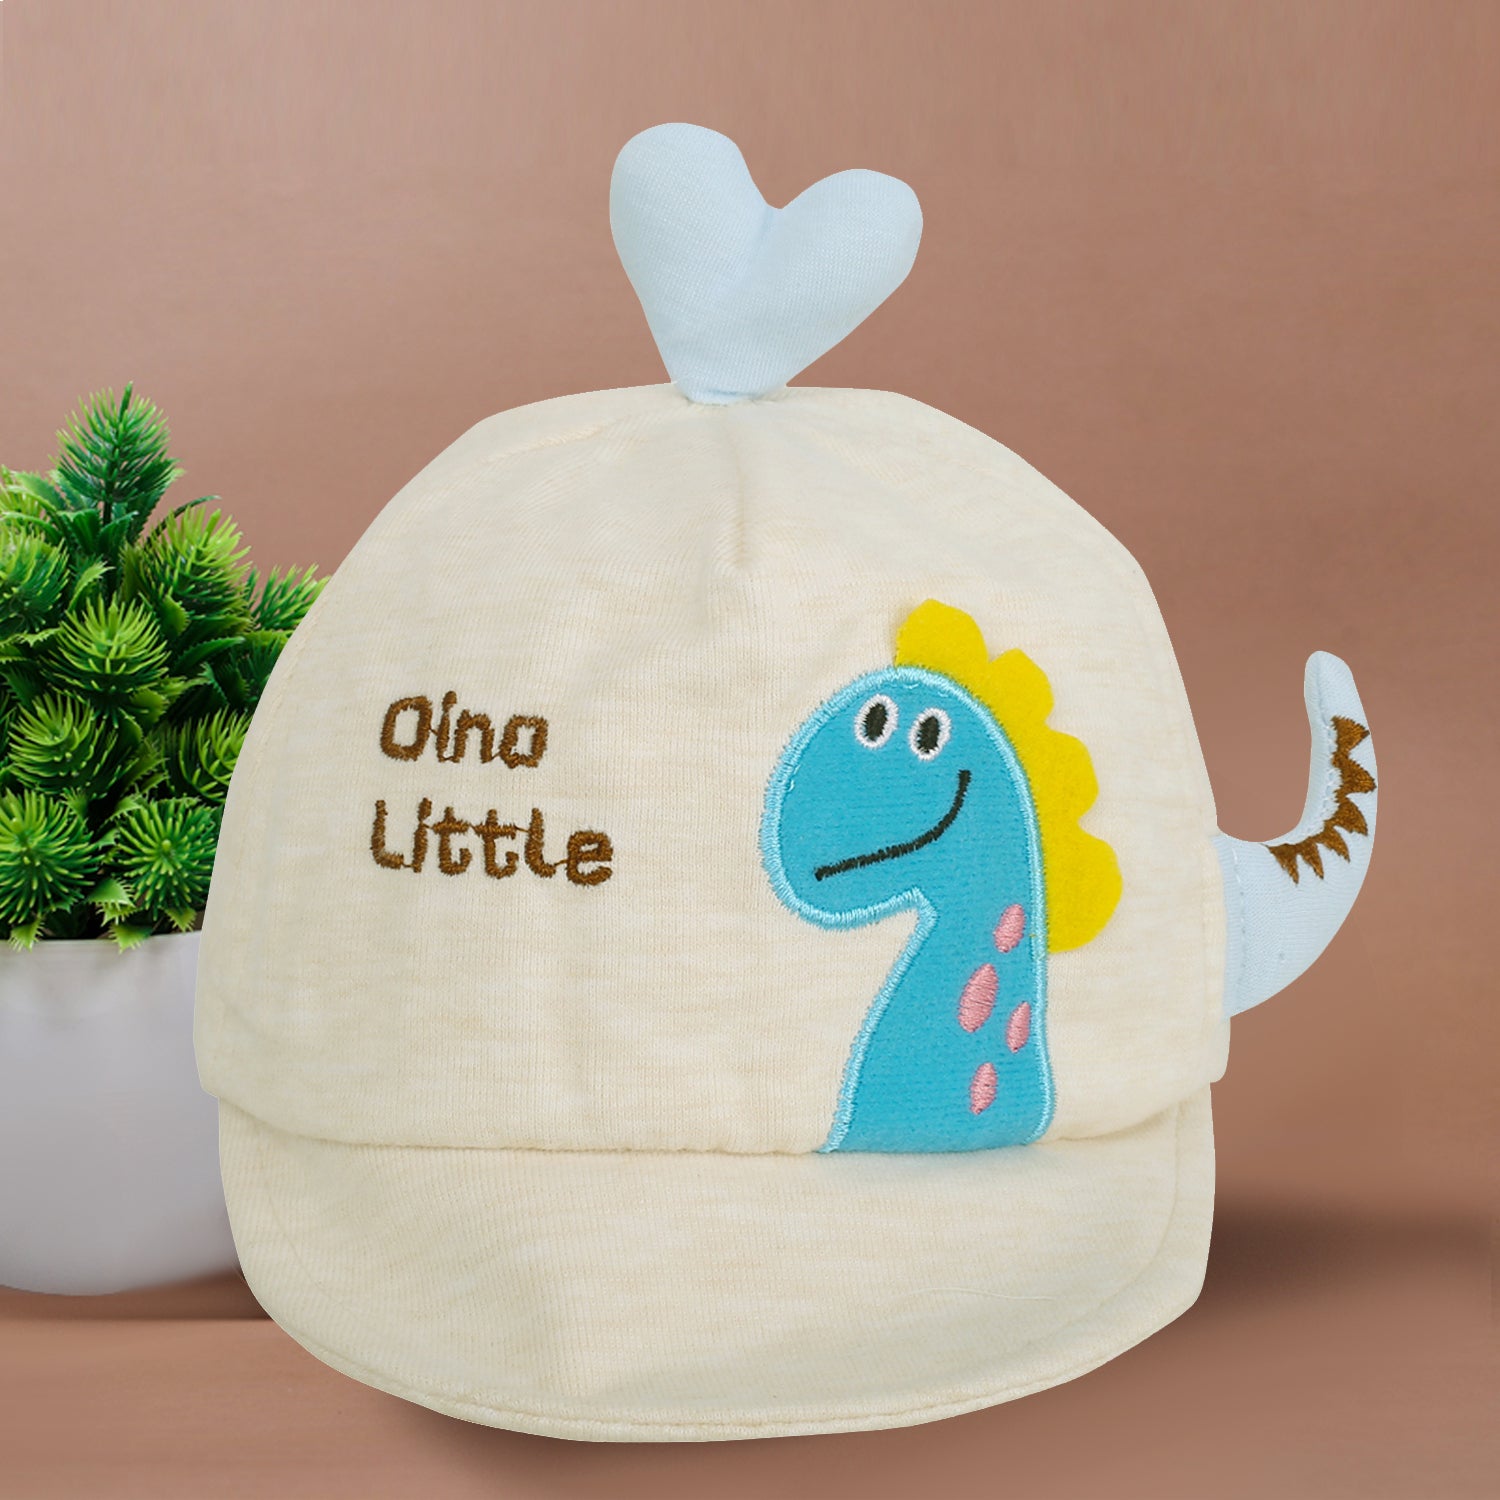 Baby Moo Dino Little Cream Caps